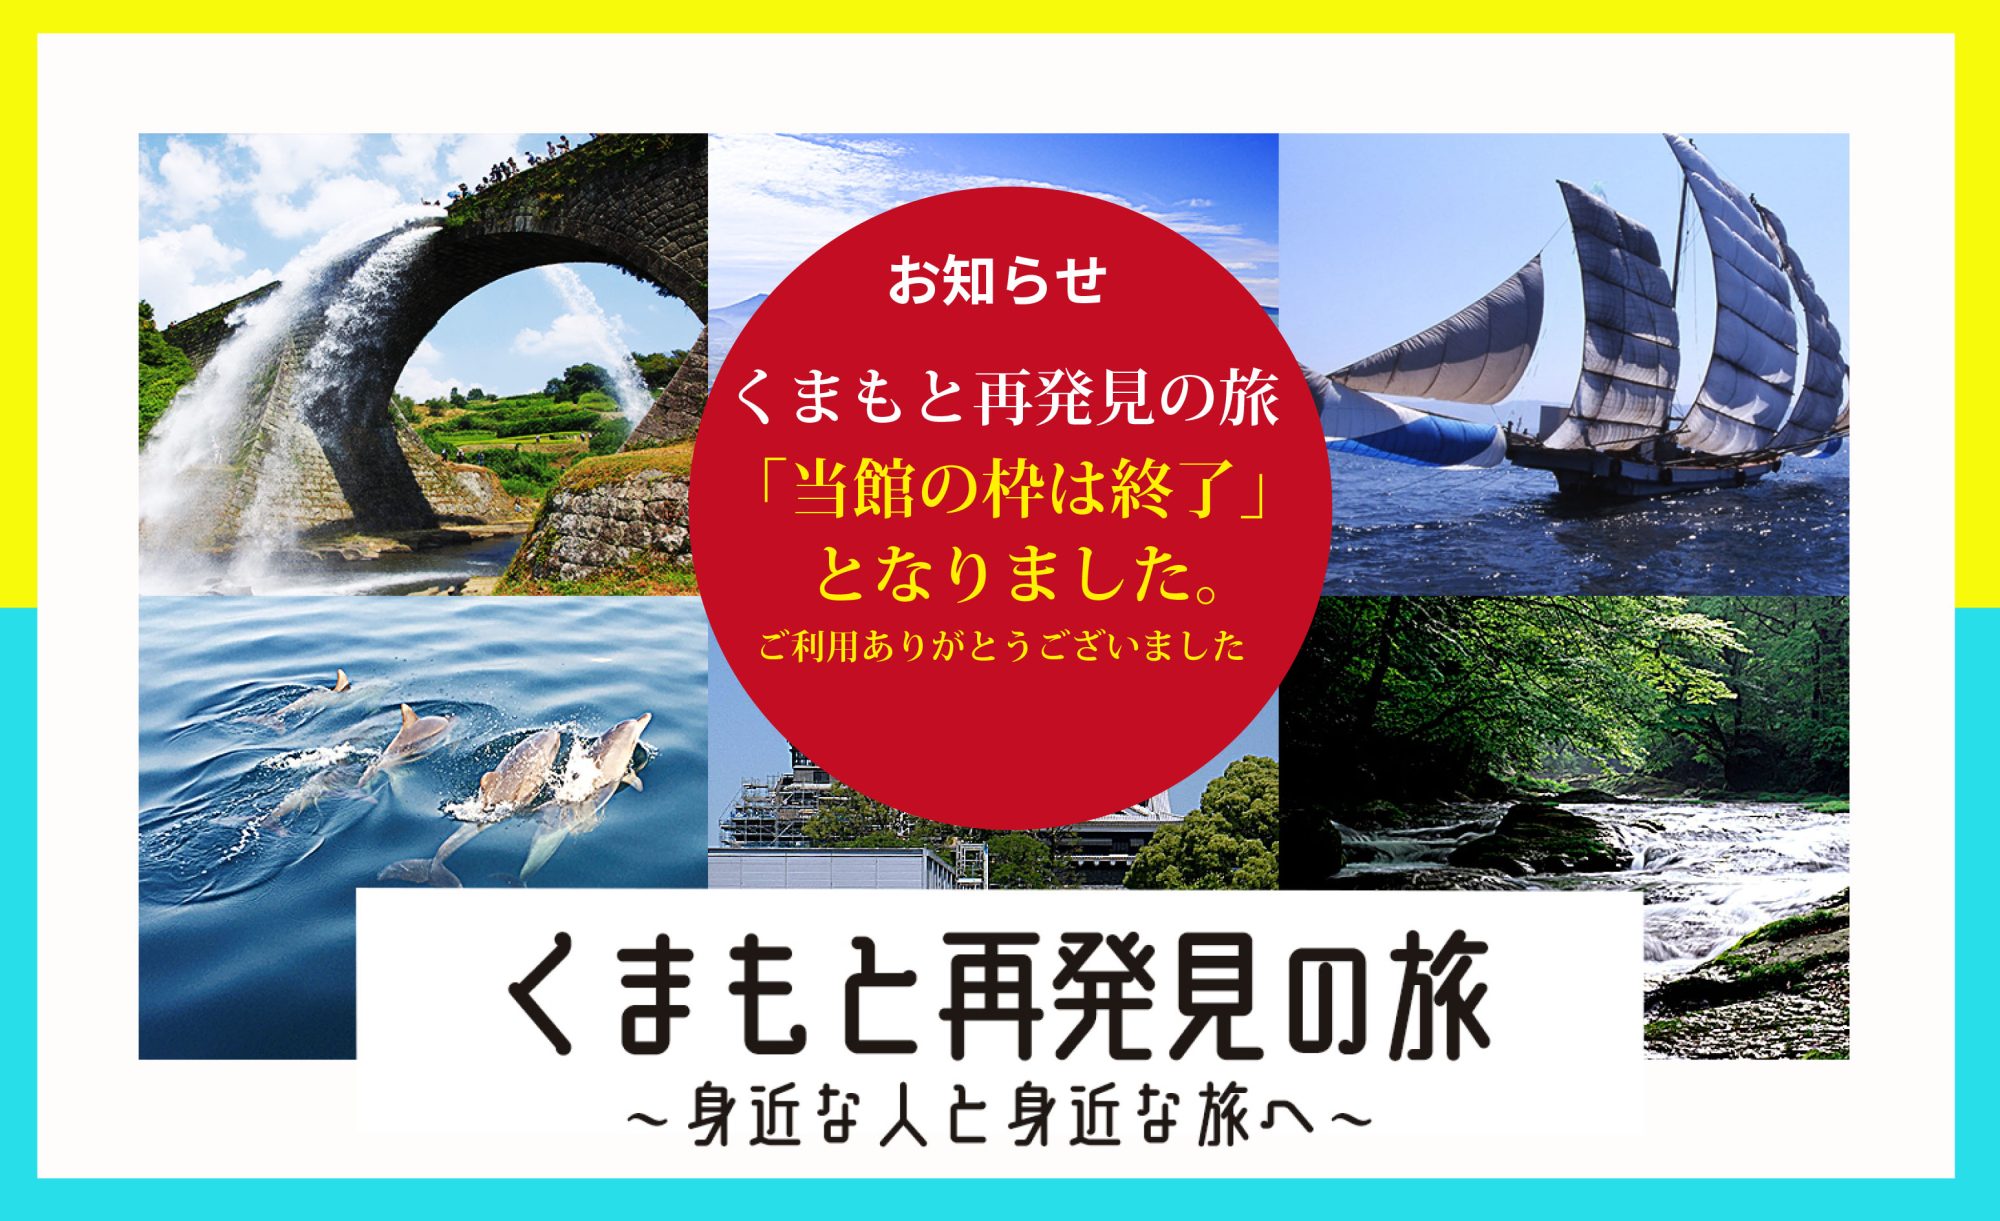 熊本 再 発見 の 旅